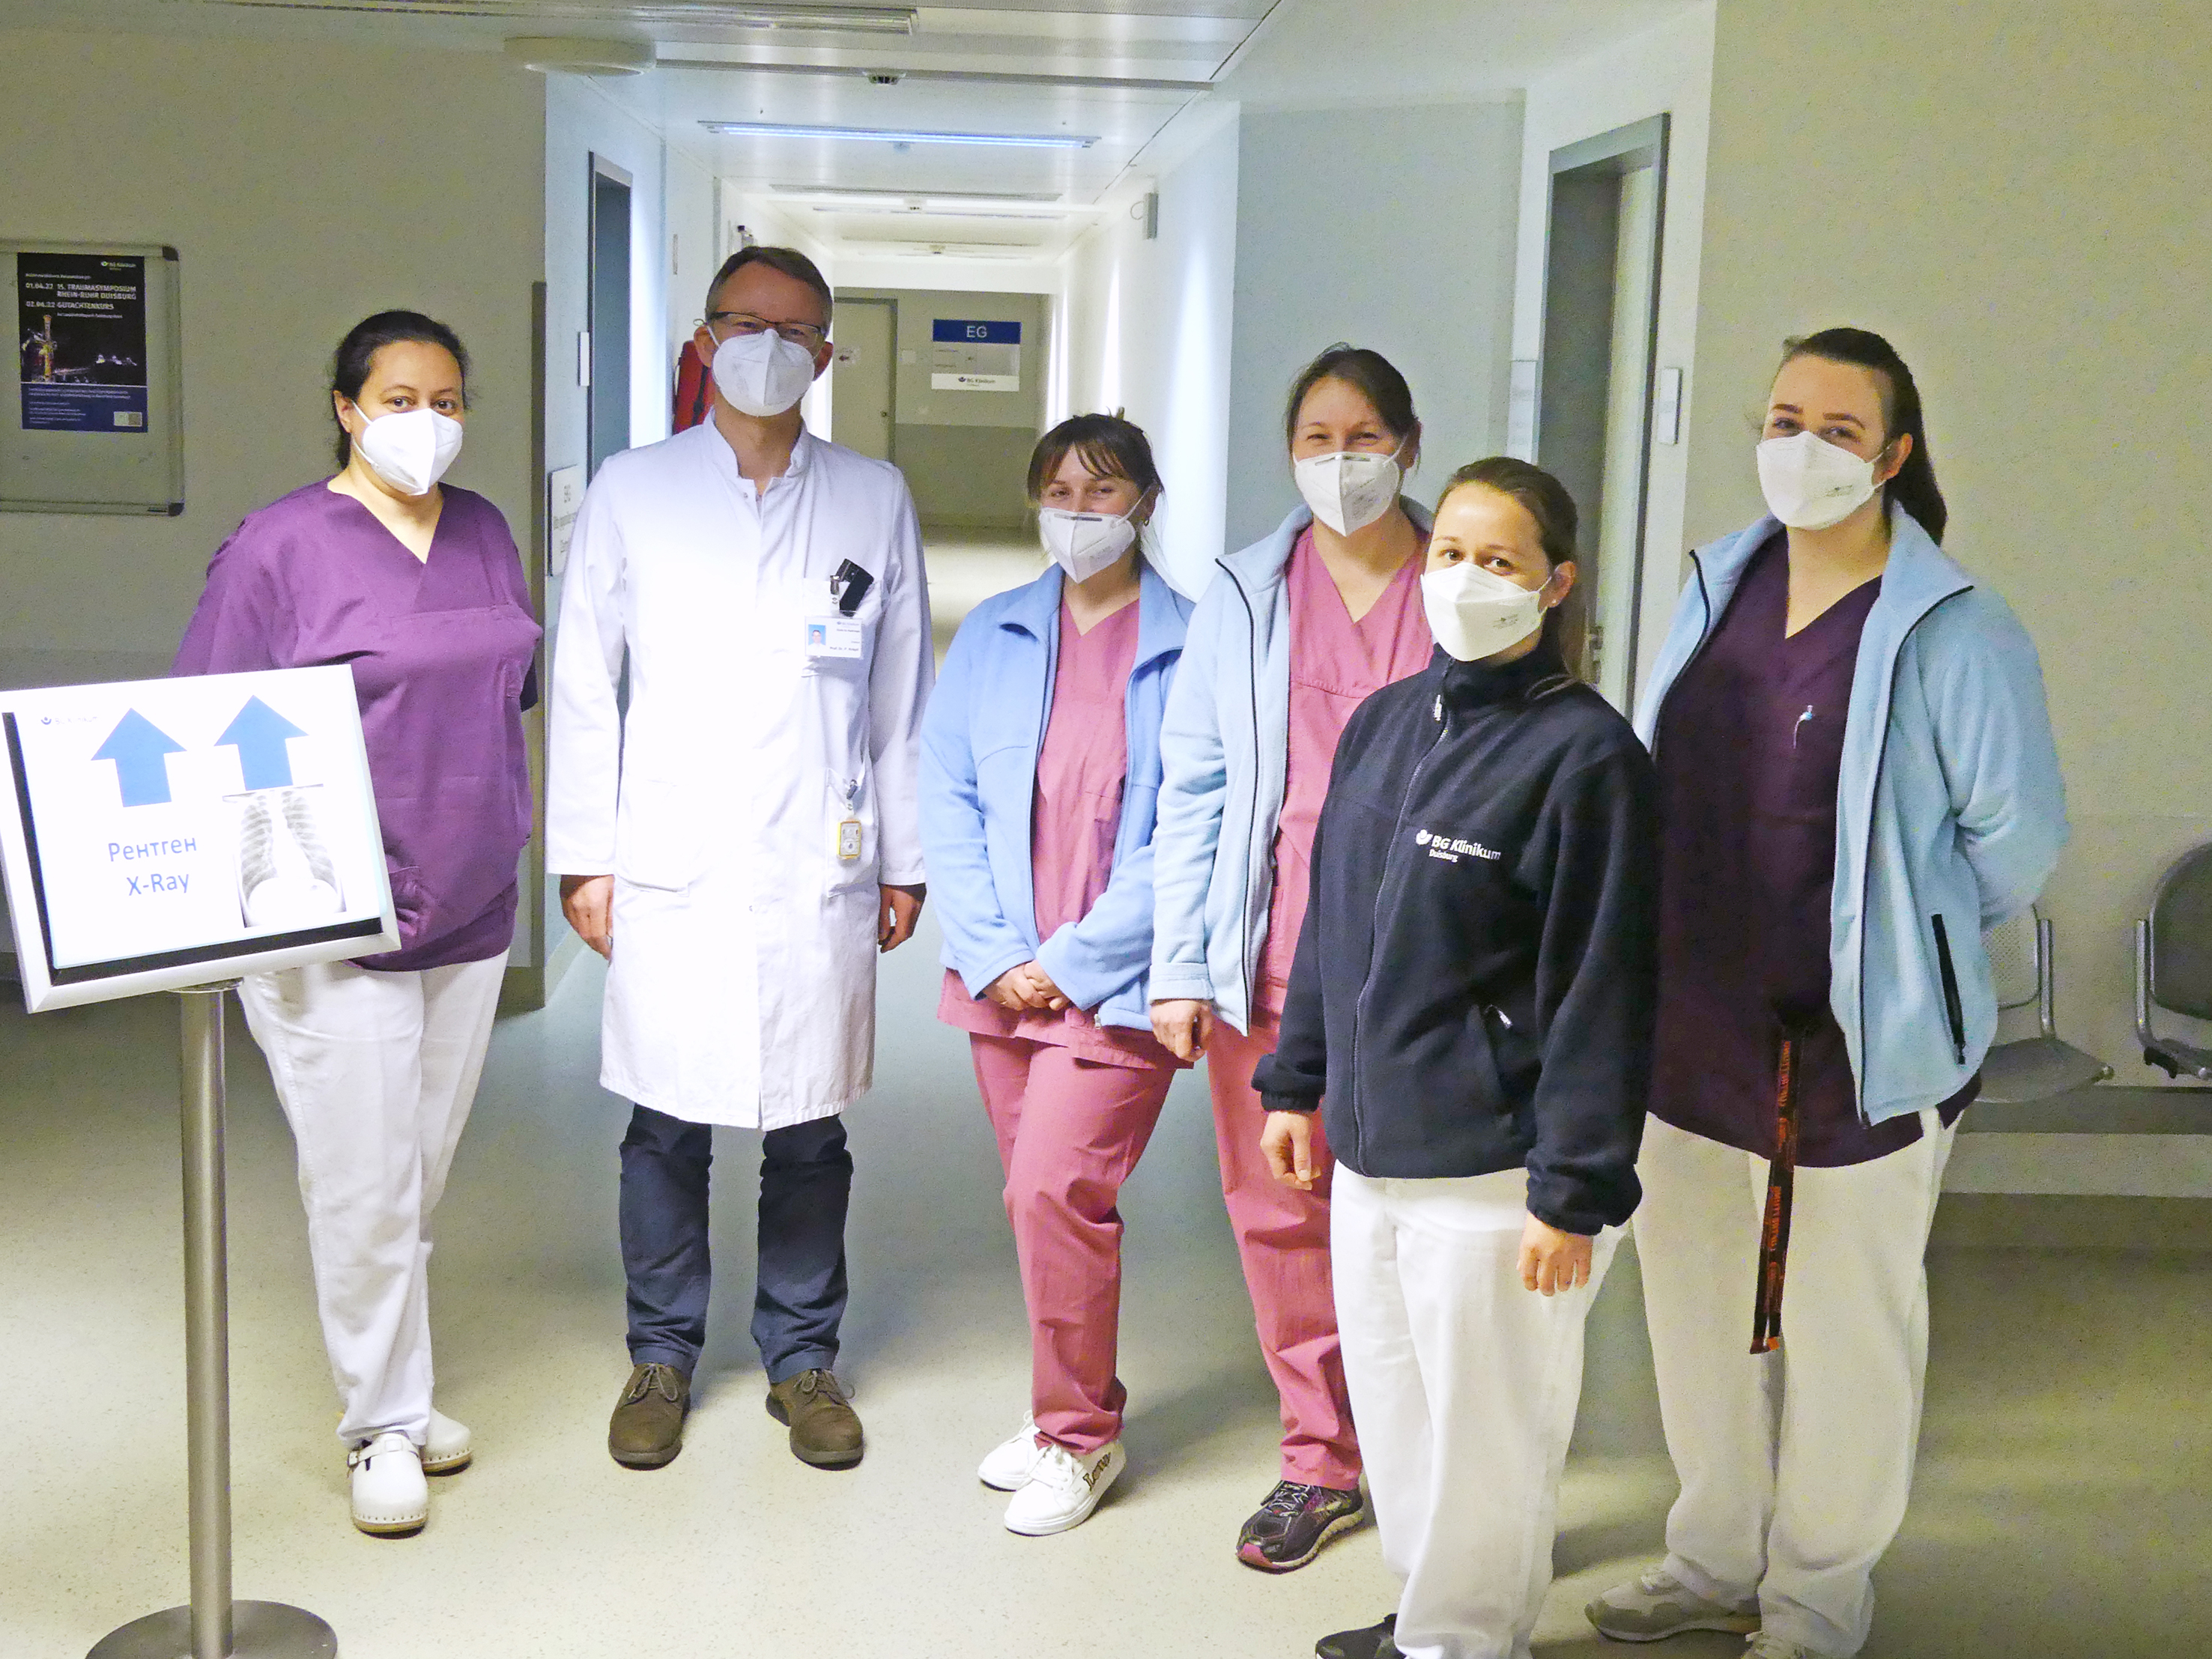 <p>Das Team um Chefarzt Prof. Dr. med. Patric Kröpil (2. von links) freut sich über die erfolgreiche Röntgenaktion.</p>
<p>Foto: BG Klinikum Duisburg</p>